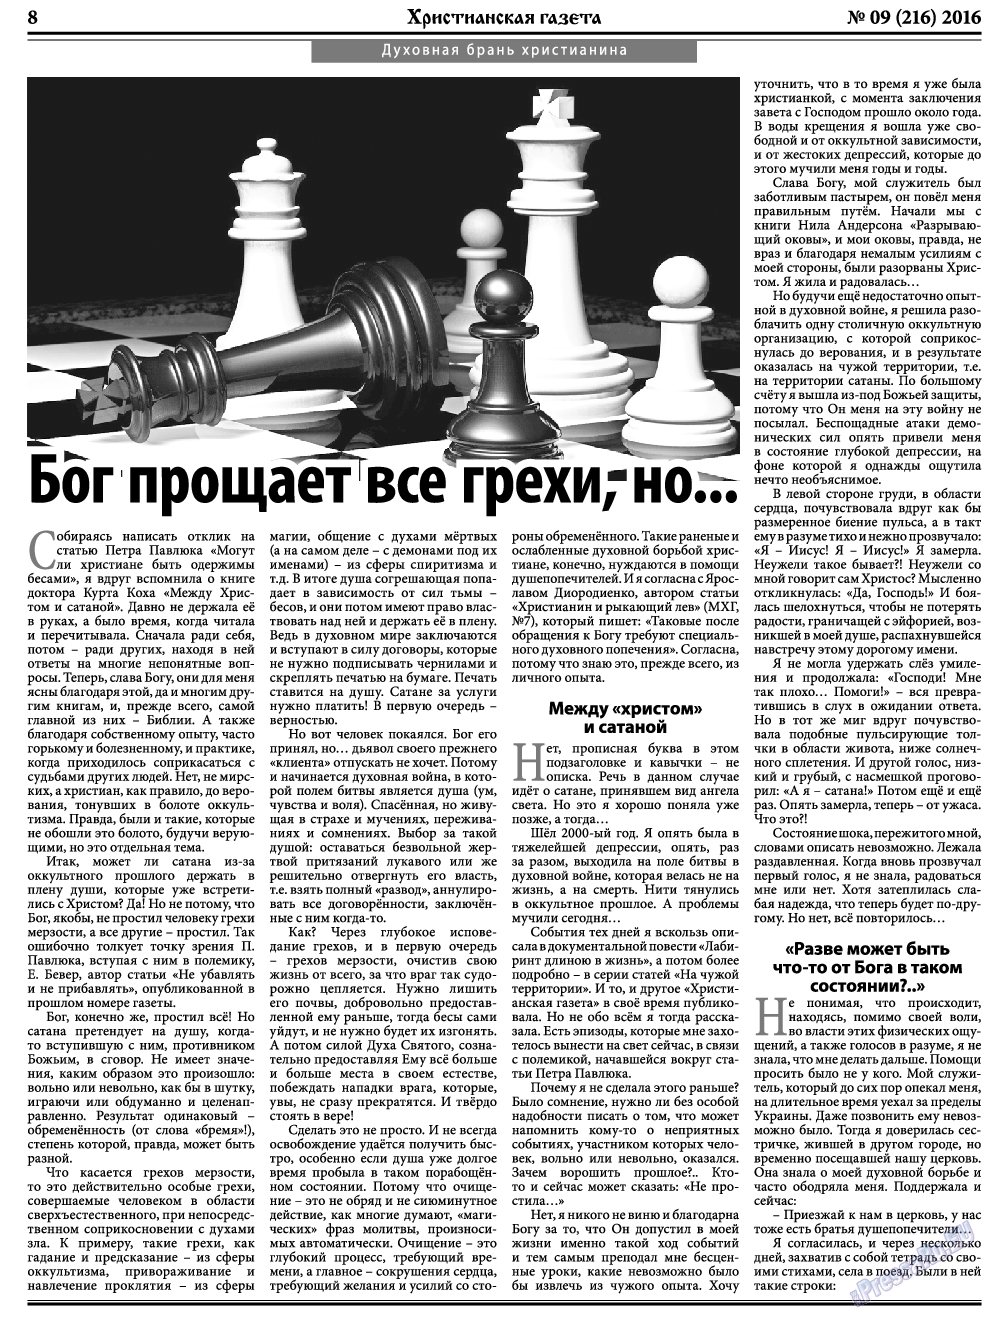 Христианская газета, газета. 2016 №9 стр.8